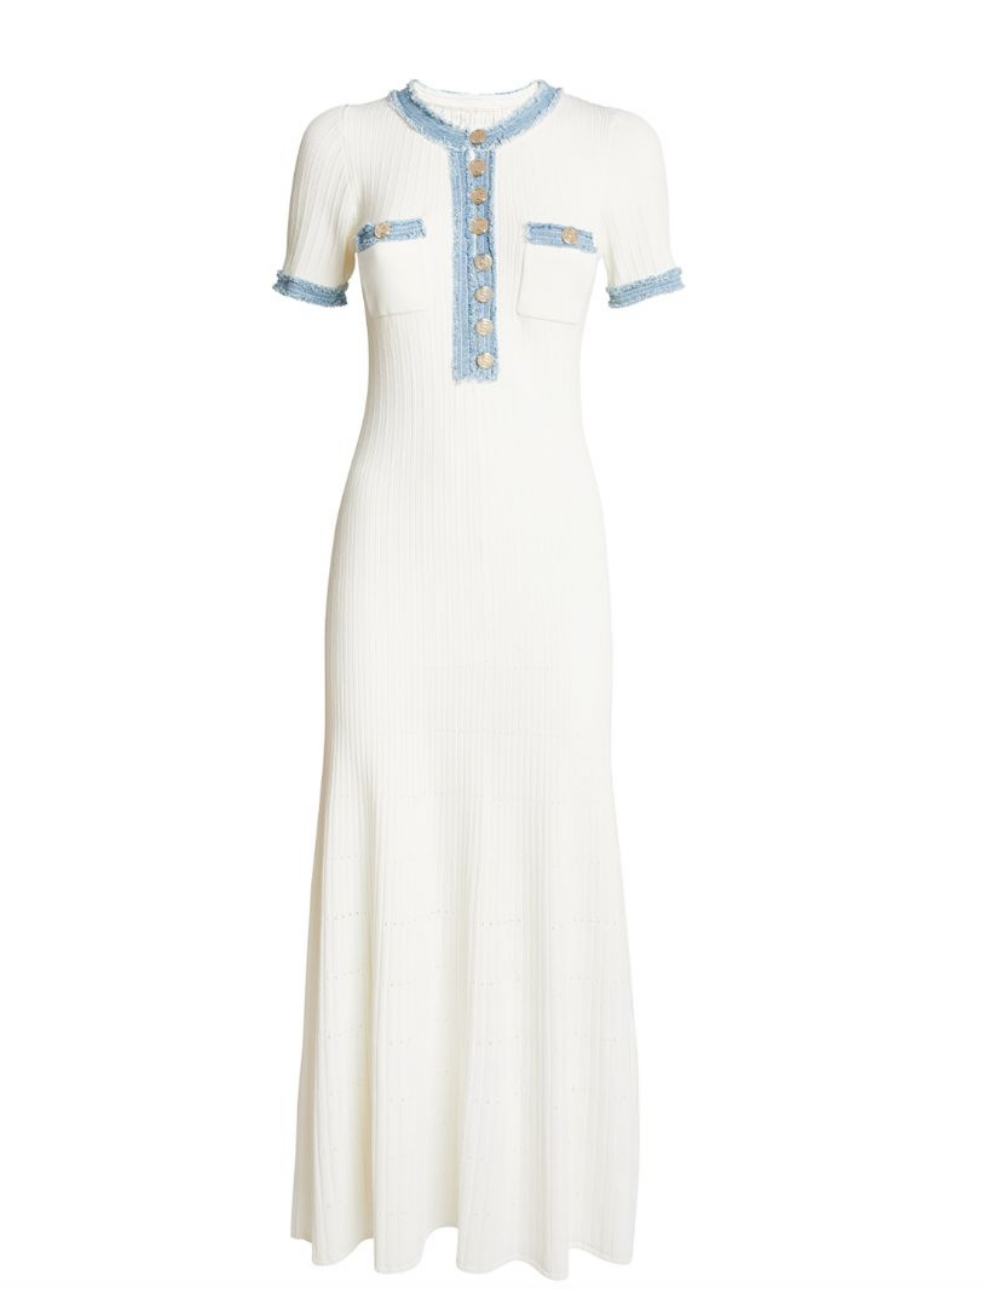 Amanda Batula's White Denim Trim Maxi Dress